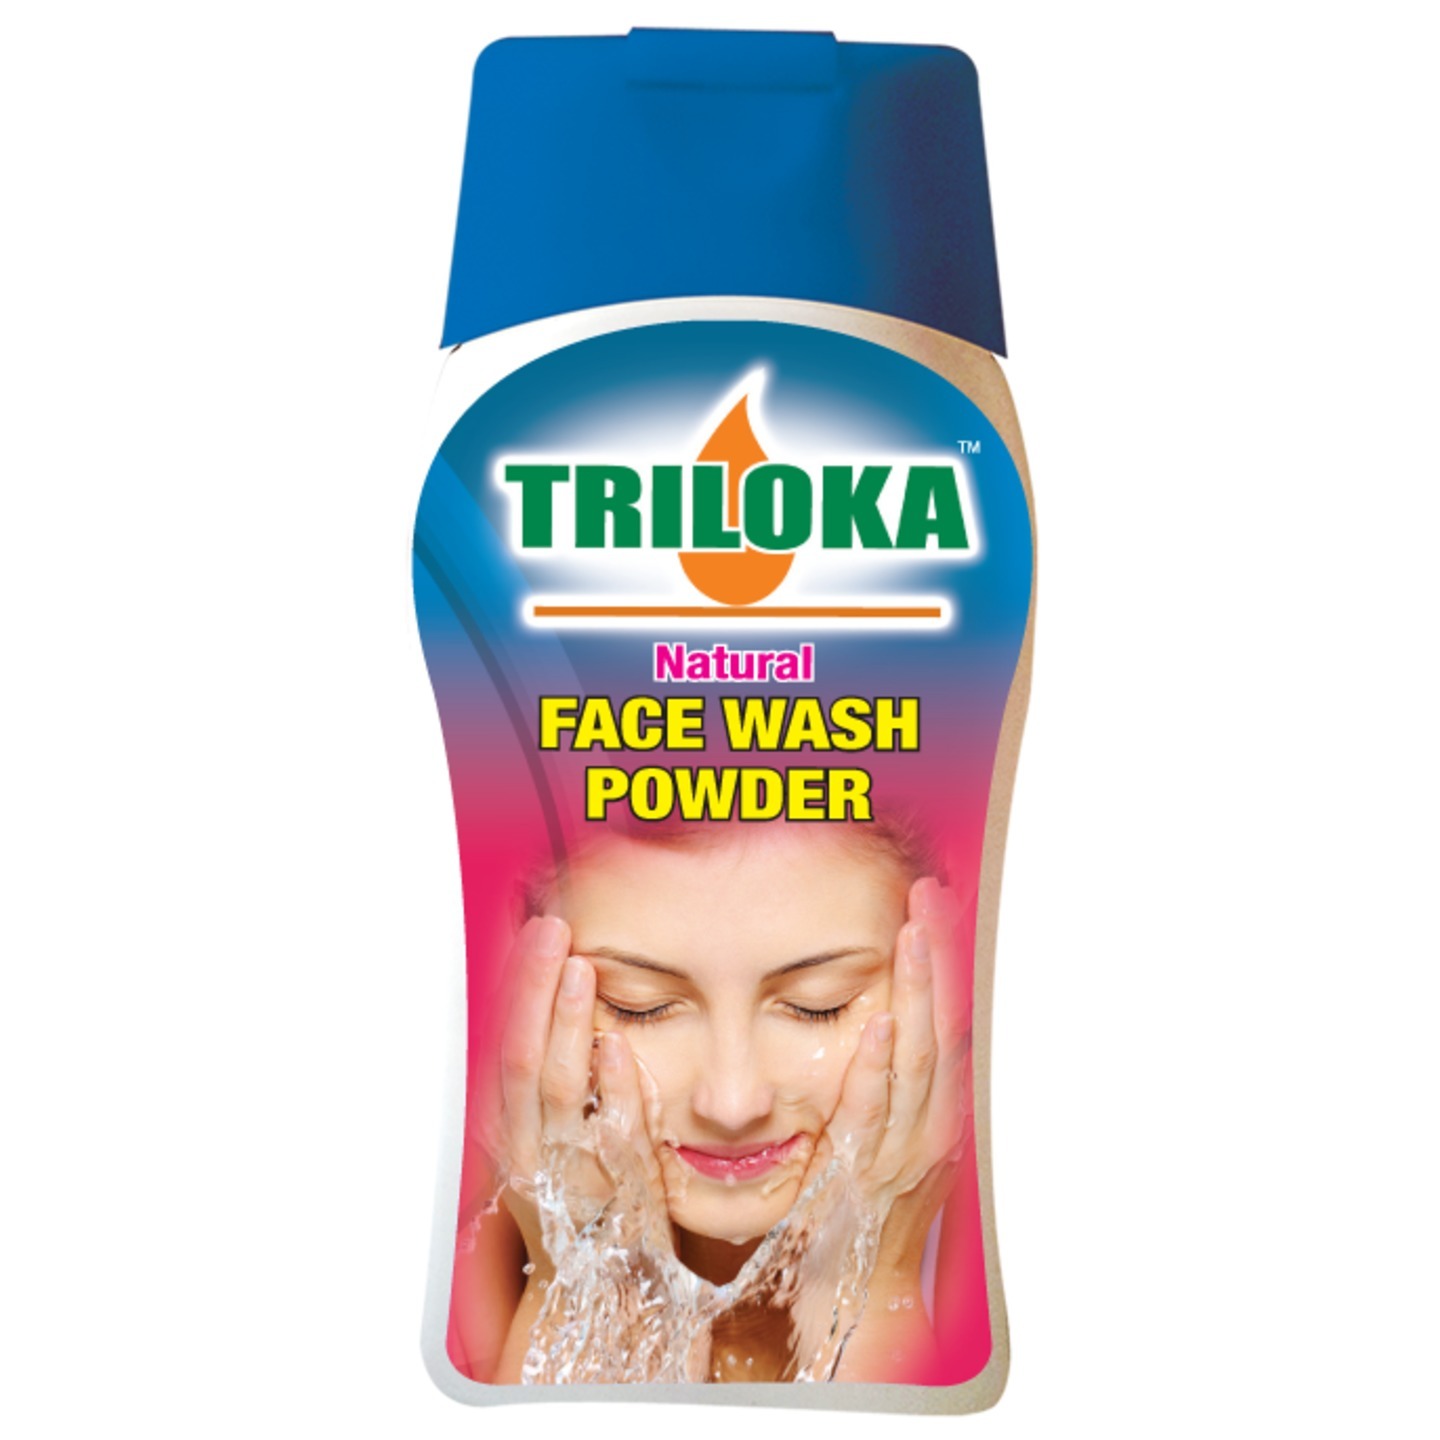 New Triloka FaceWash Powder